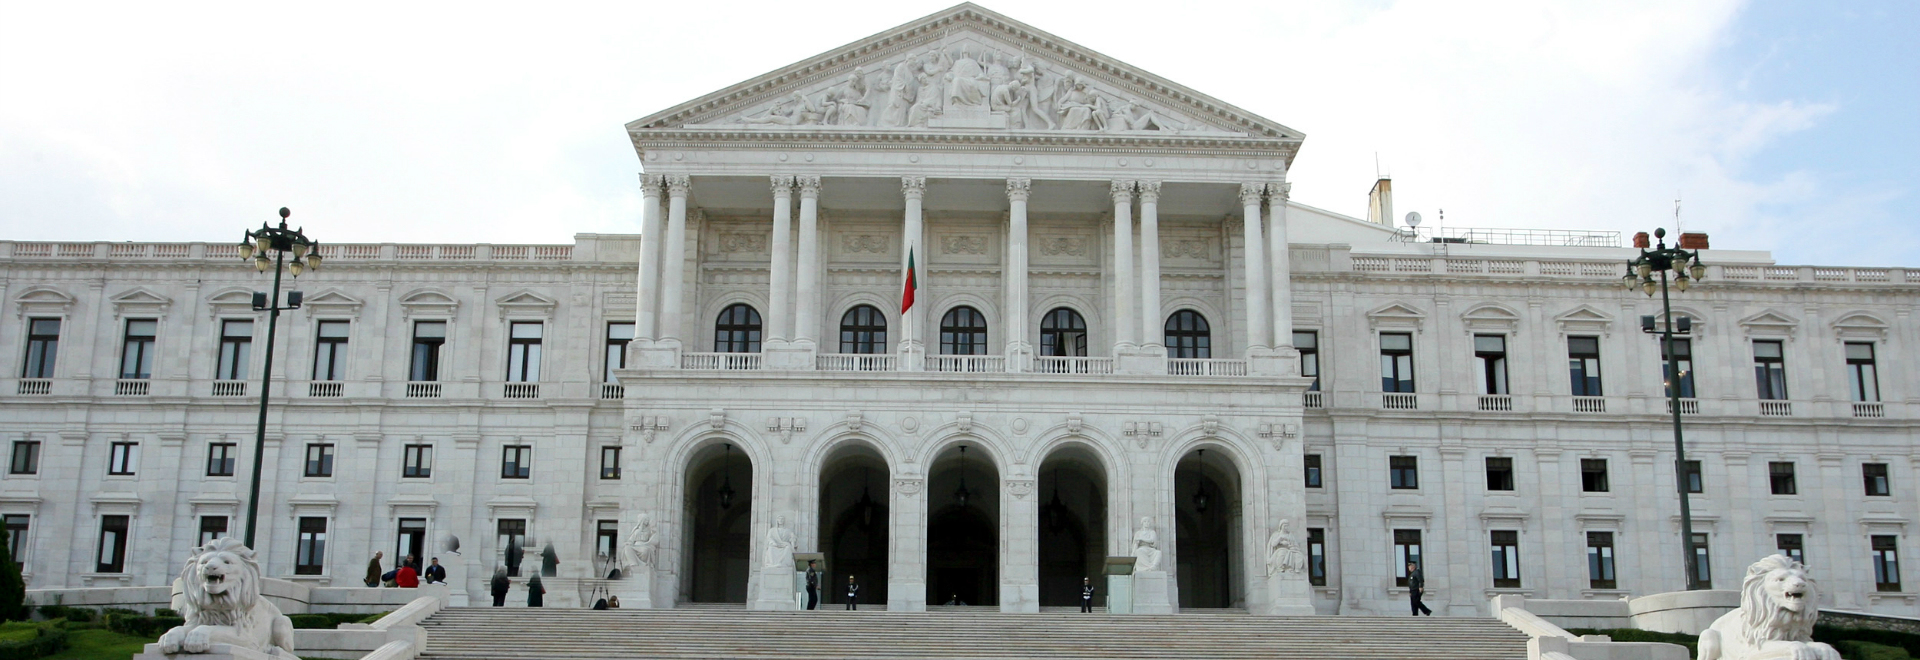 Palacio de Sao Bento Lisboa Portugal